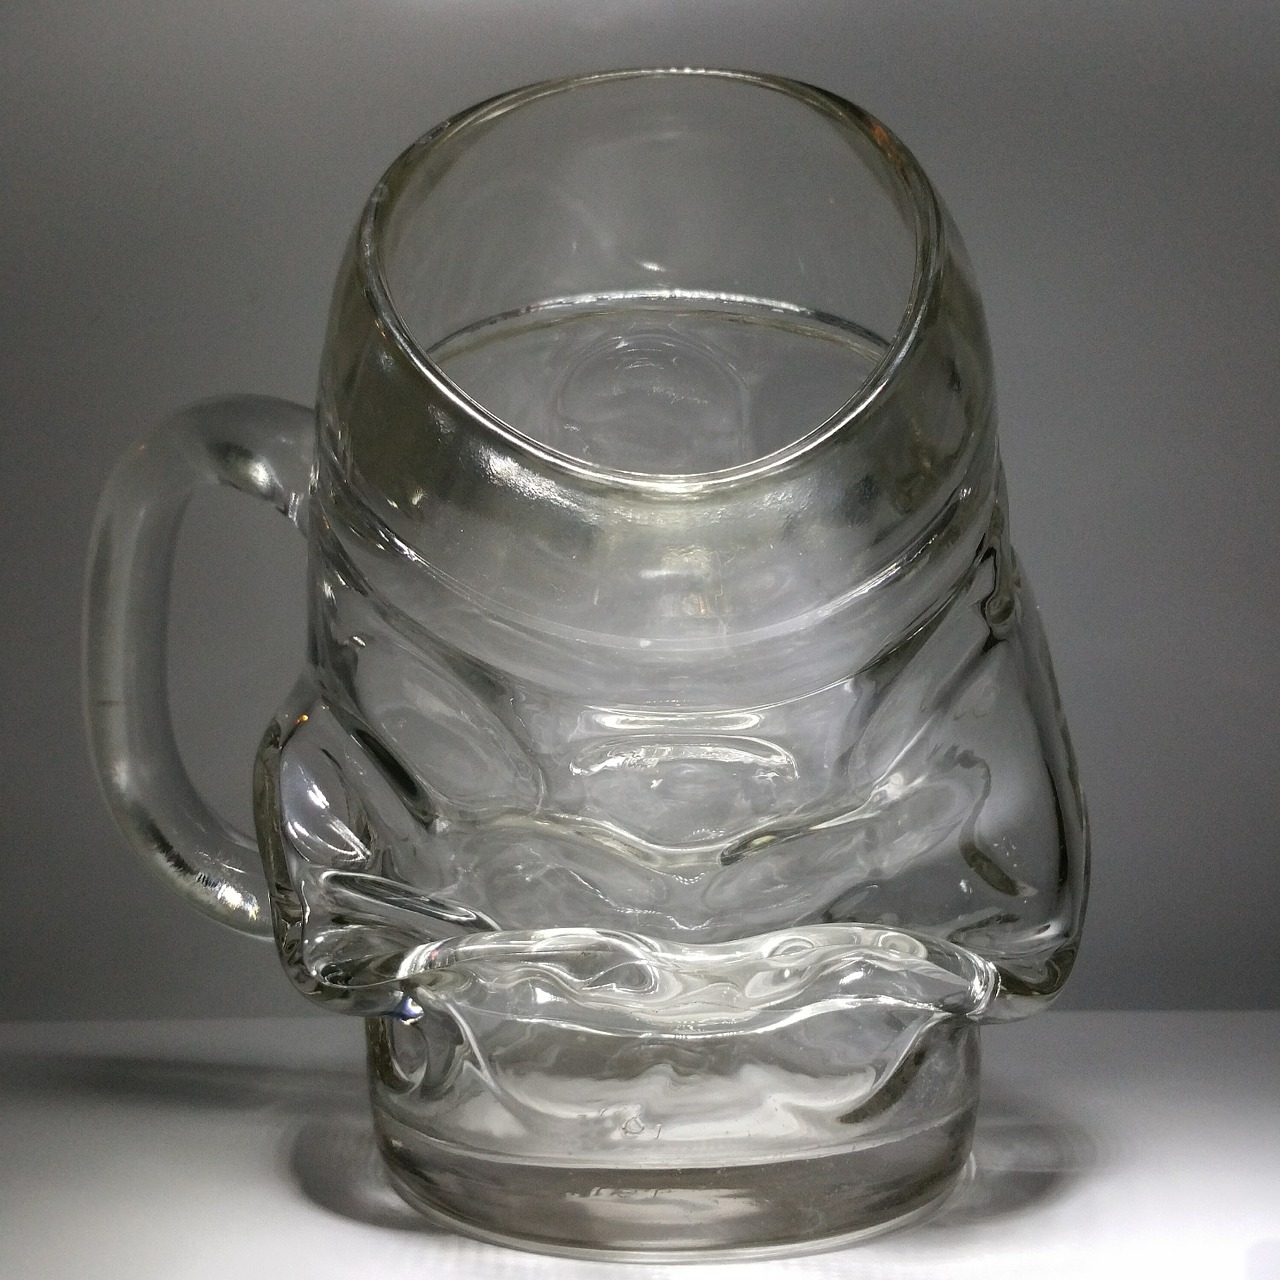 mug beer glass mug free photo